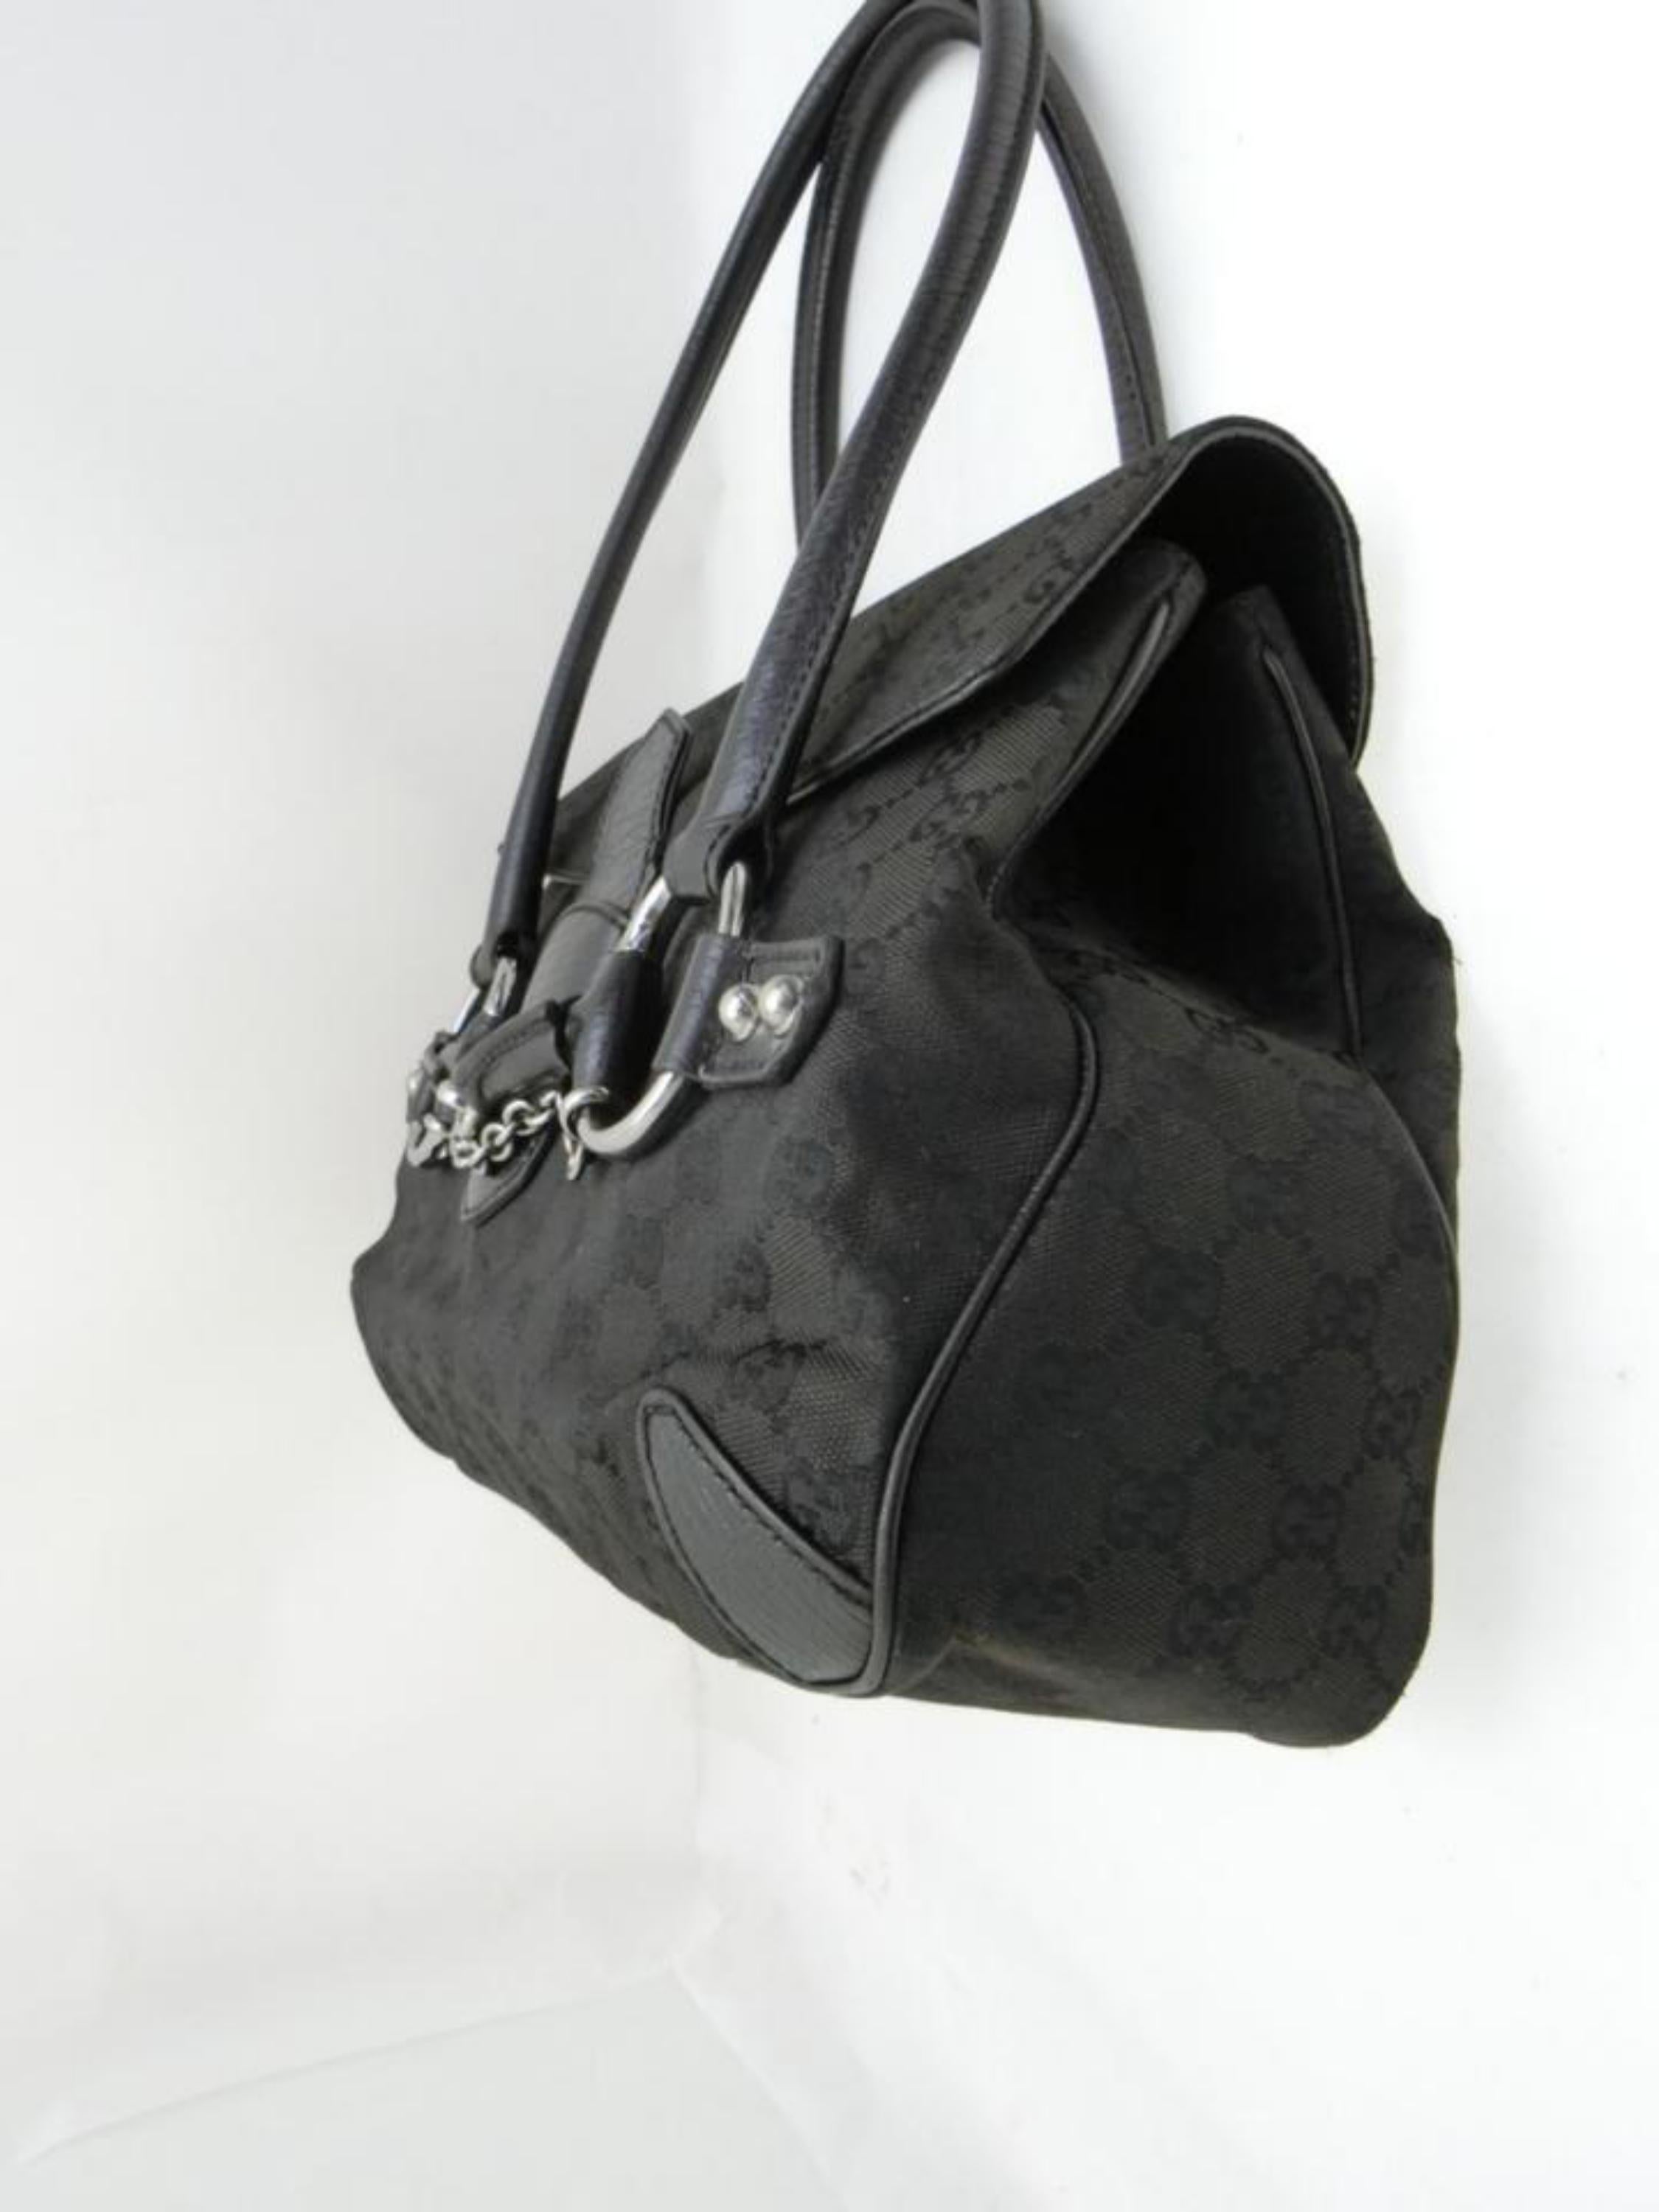 Gucci Horsebit Monogram Chain Satchel 231789 Black Canvas Shoulder Bag For Sale 2